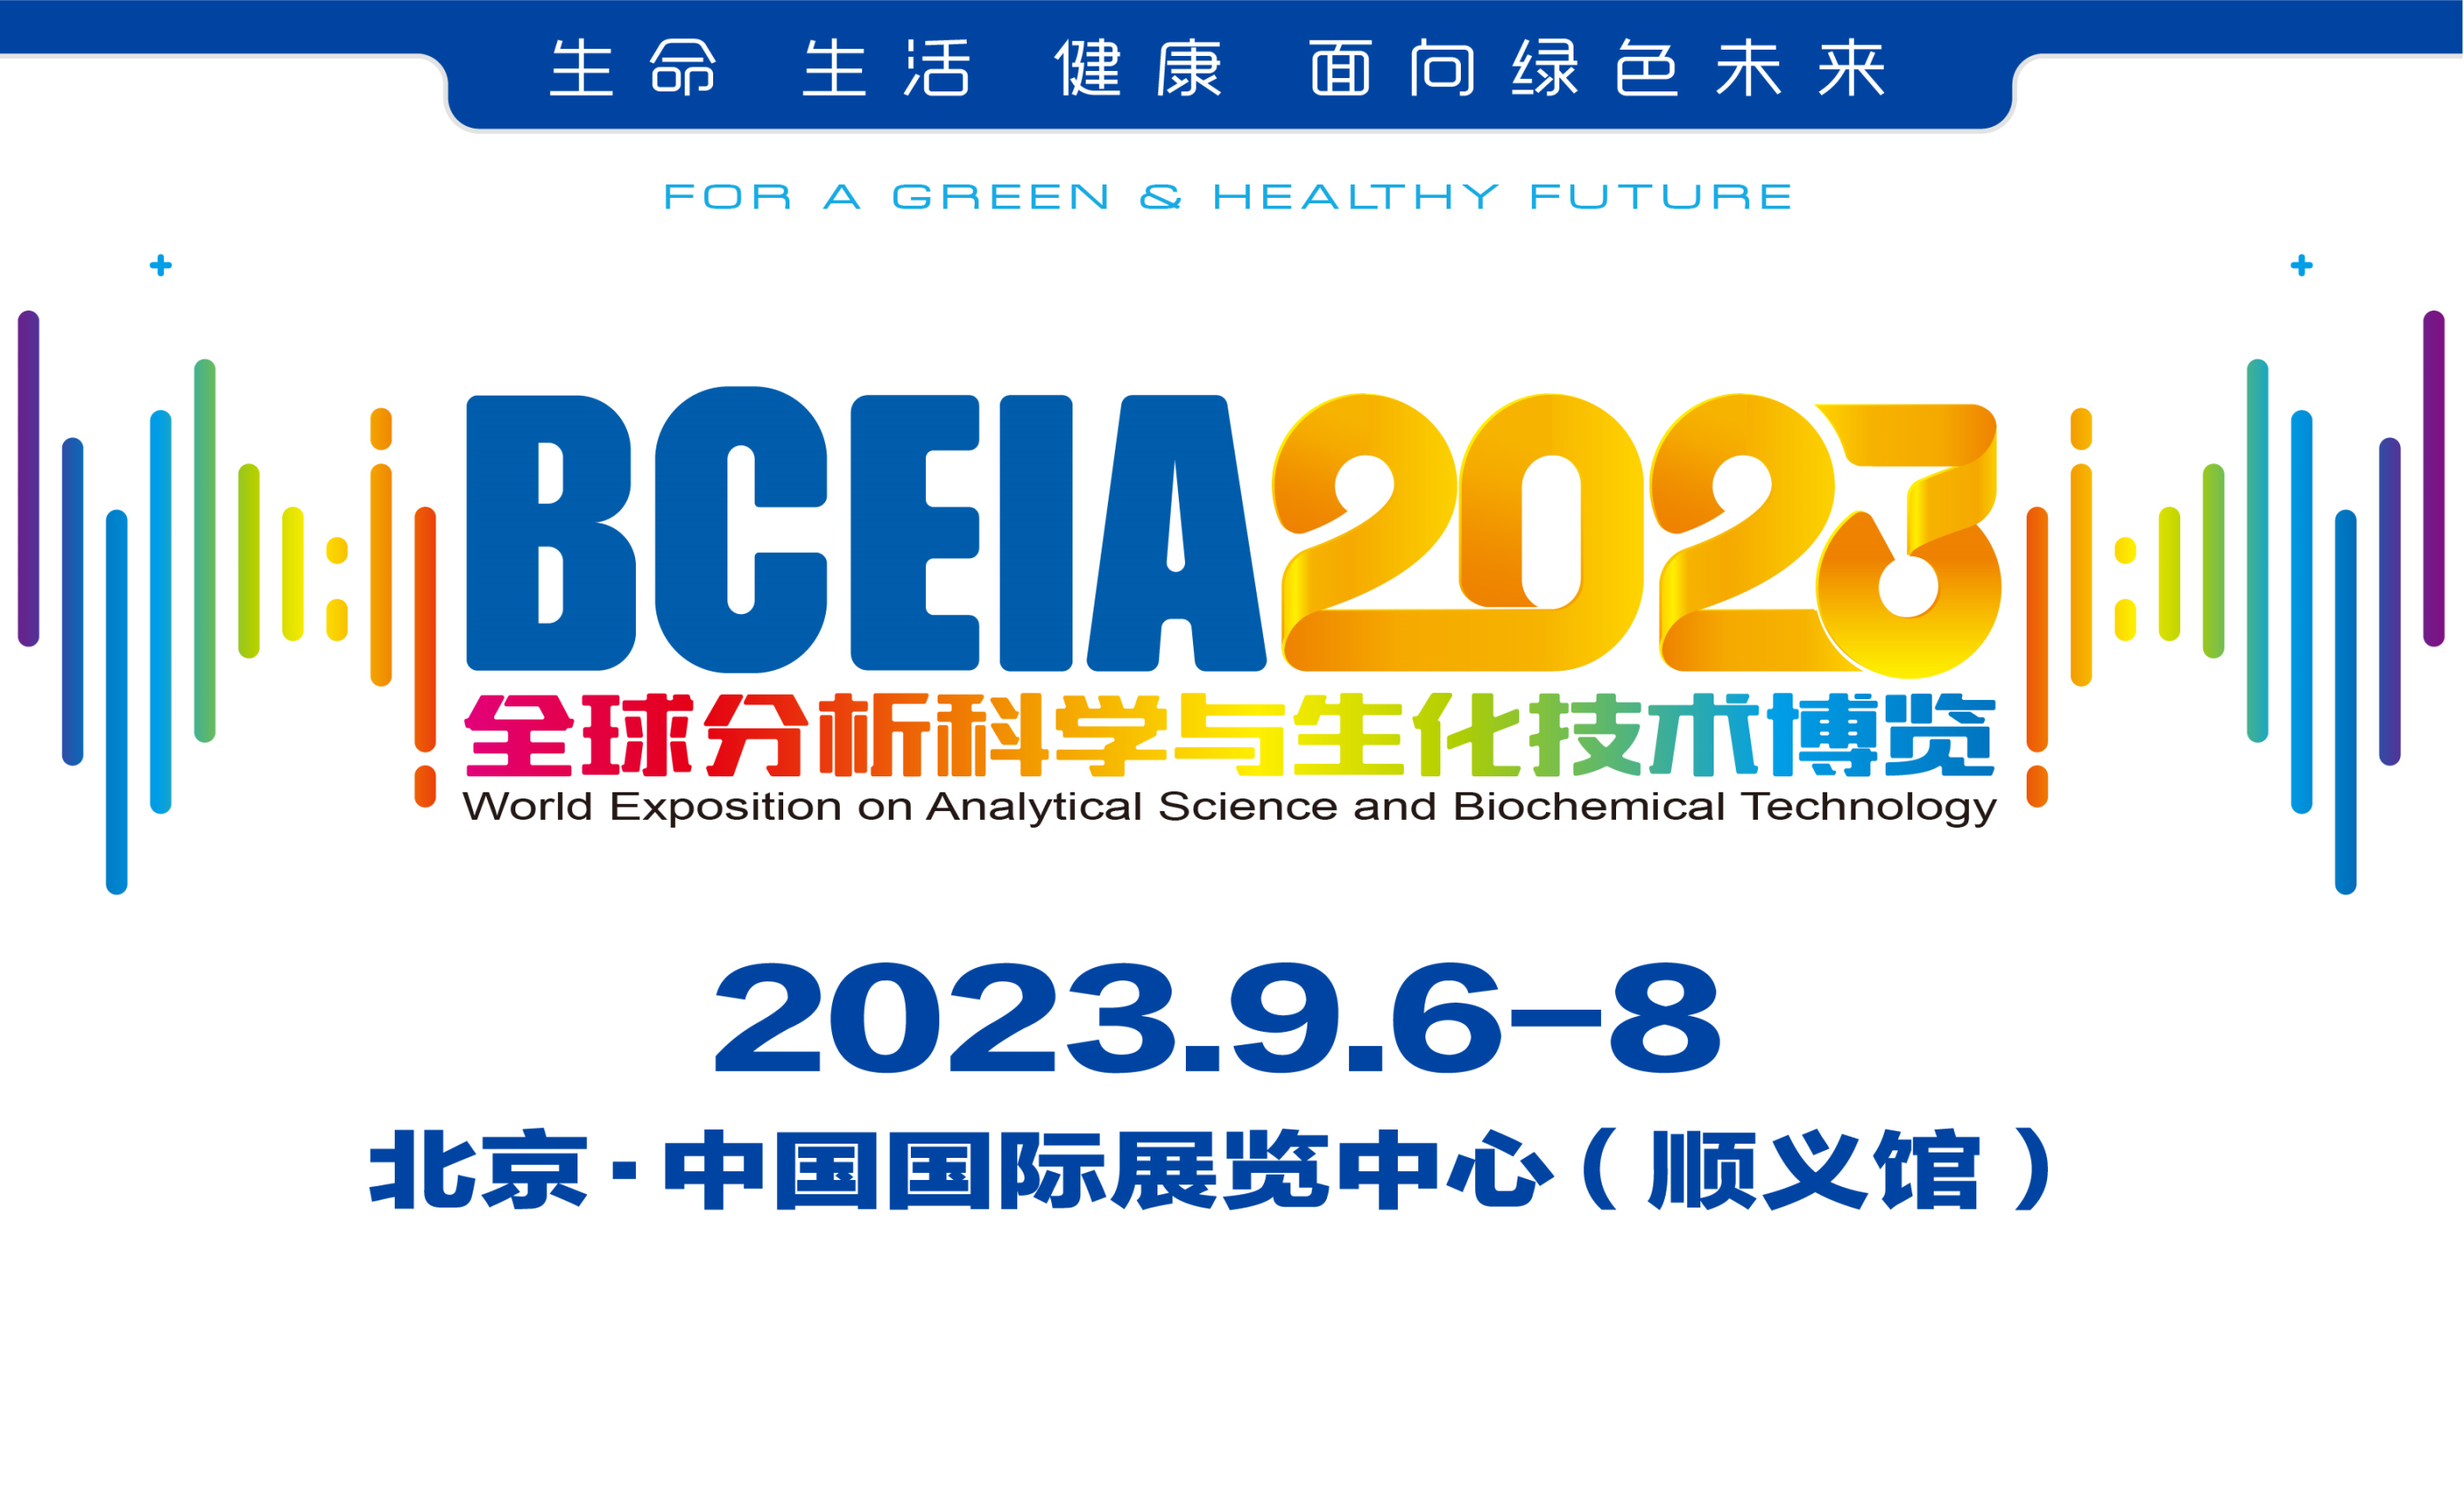 上海隐智邀您参加2023北京BCEIA展会交流合作 展位号E2181